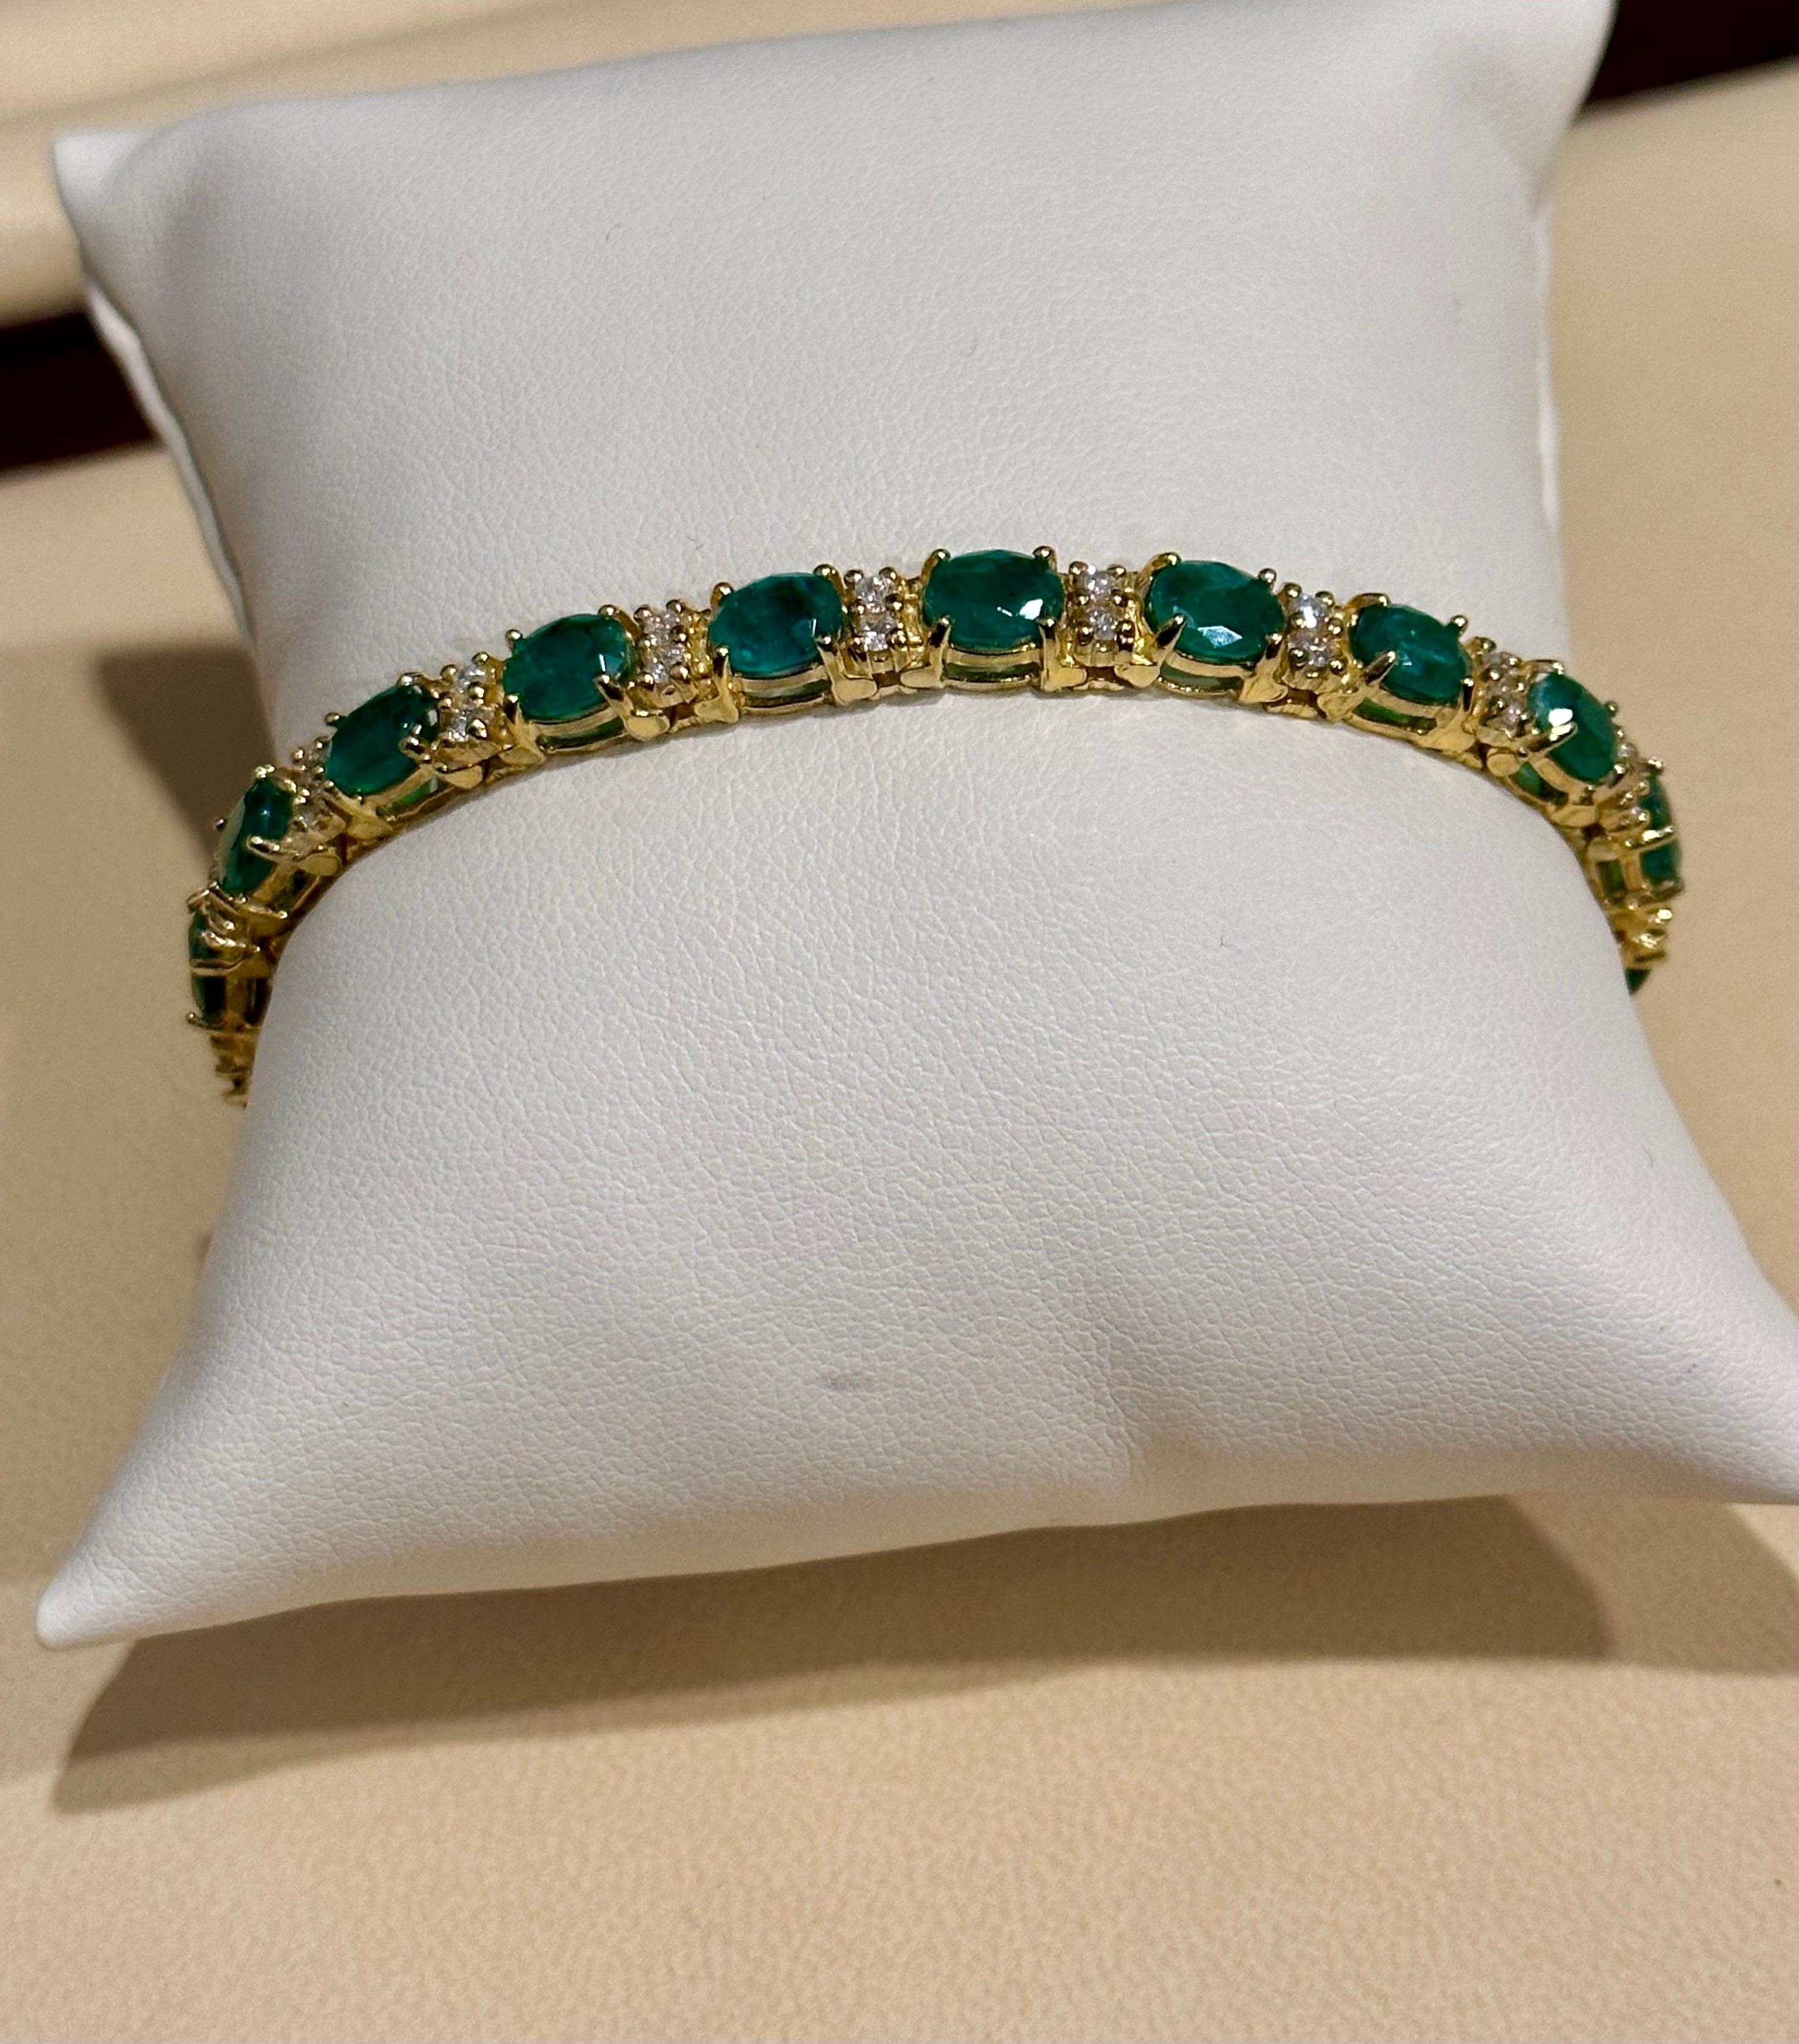 13 Carat Natural Emerald & Diamond Cocktail Tennis Bracelet 14 Karat Yellow Gold 7